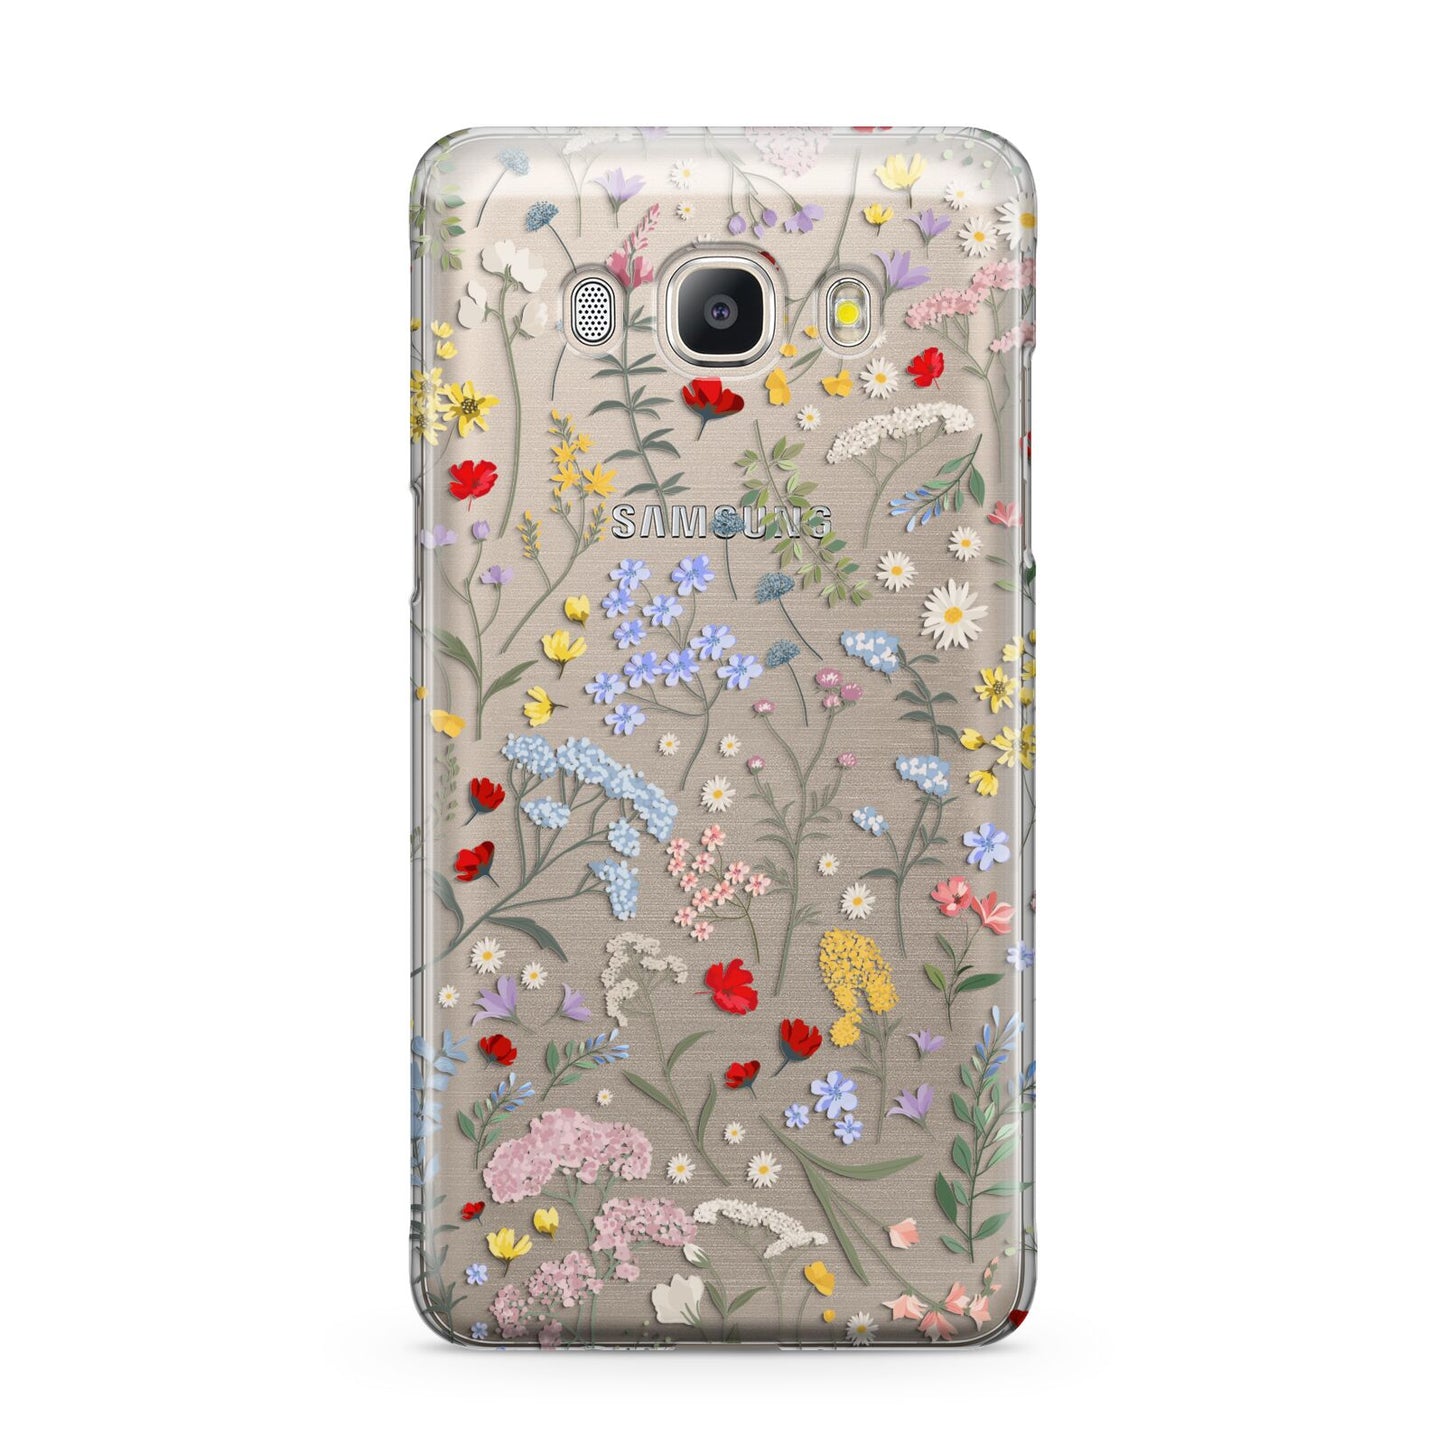 Wild Flowers Samsung Galaxy J5 2016 Case